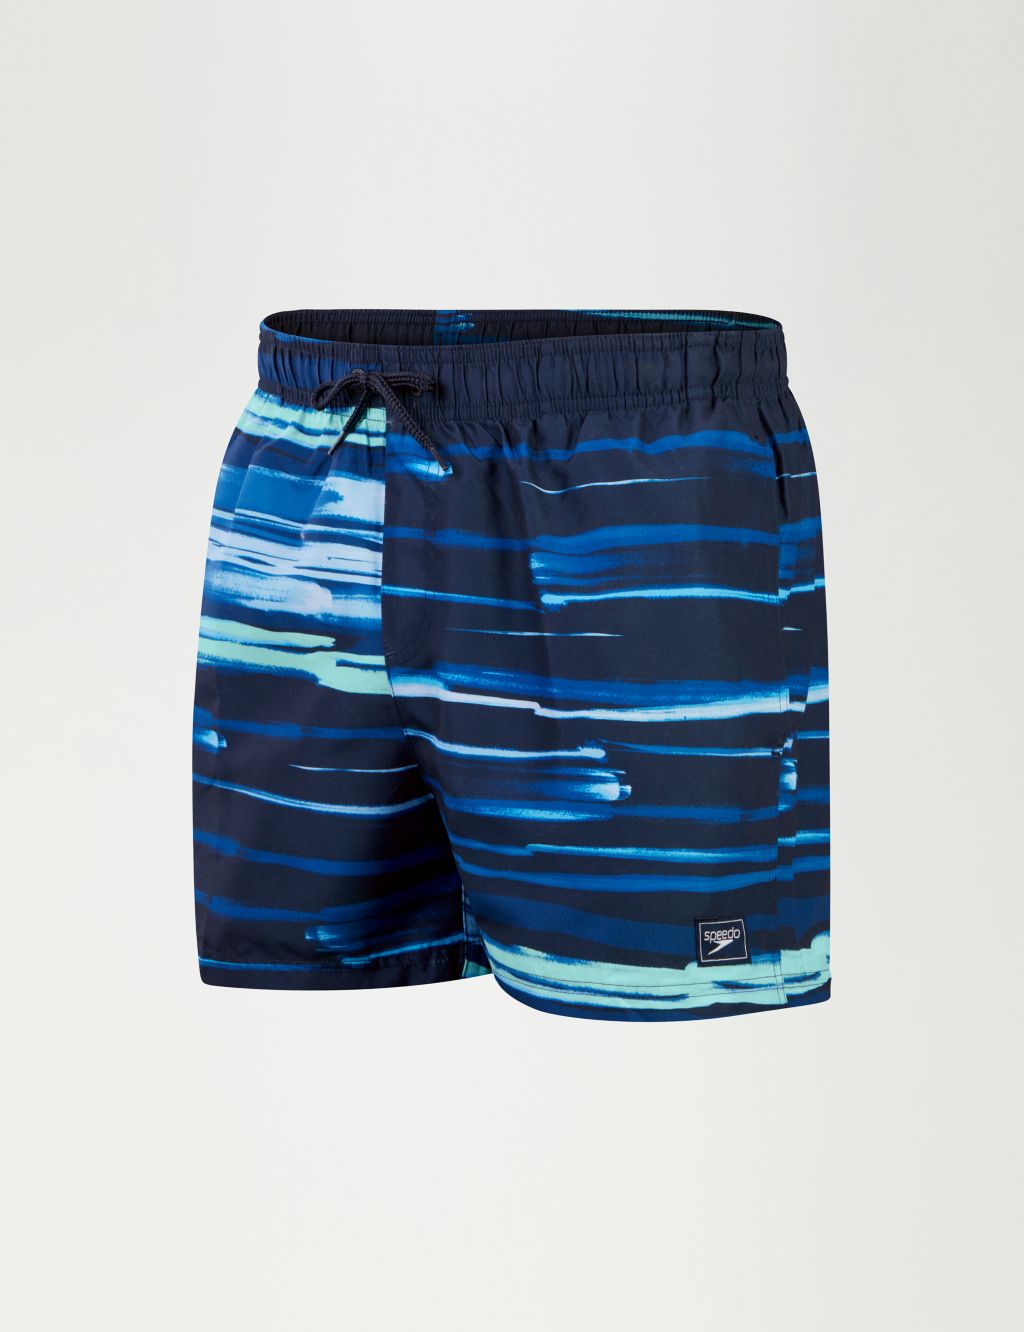 Essentials Pocketed Striped Swim Shorts | Speedo | M&S